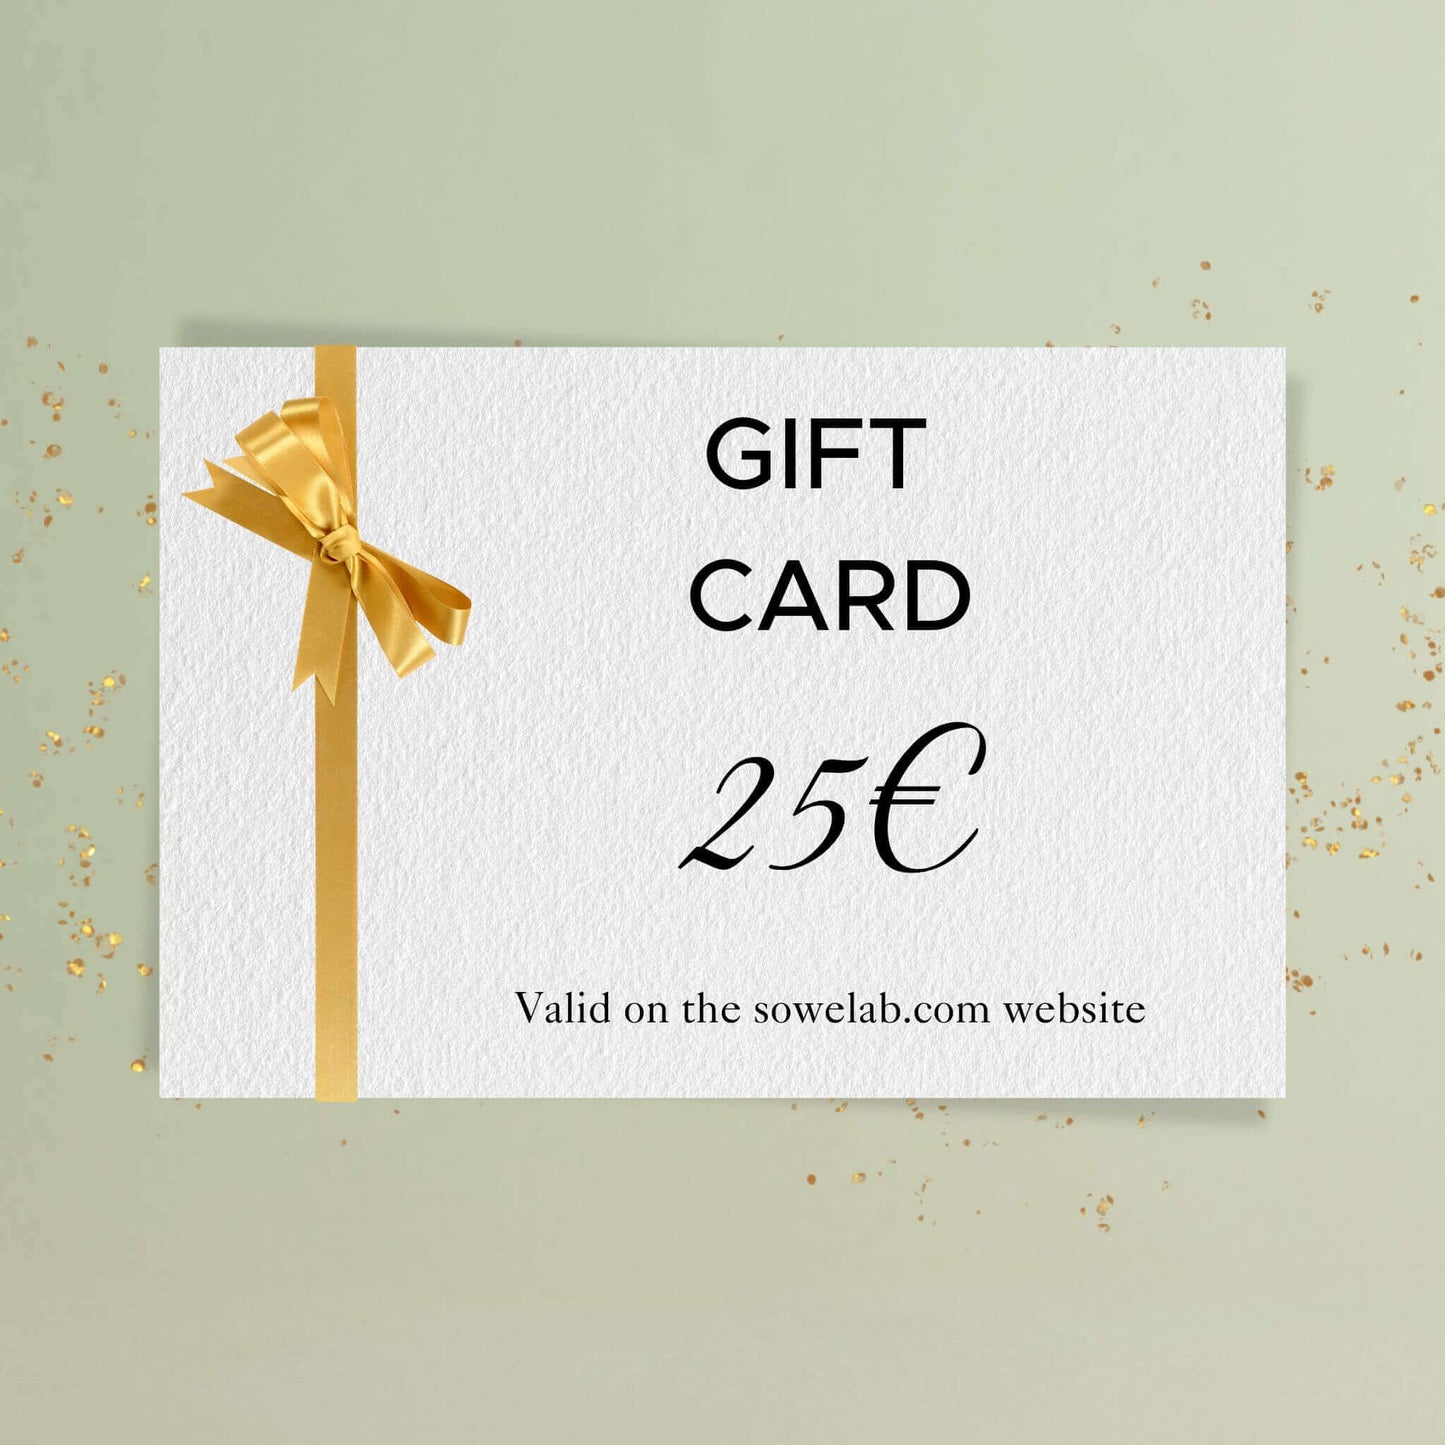 Carte cadeau - Gift card - Tarjeta regalo - Cartão-presente - 25 euros